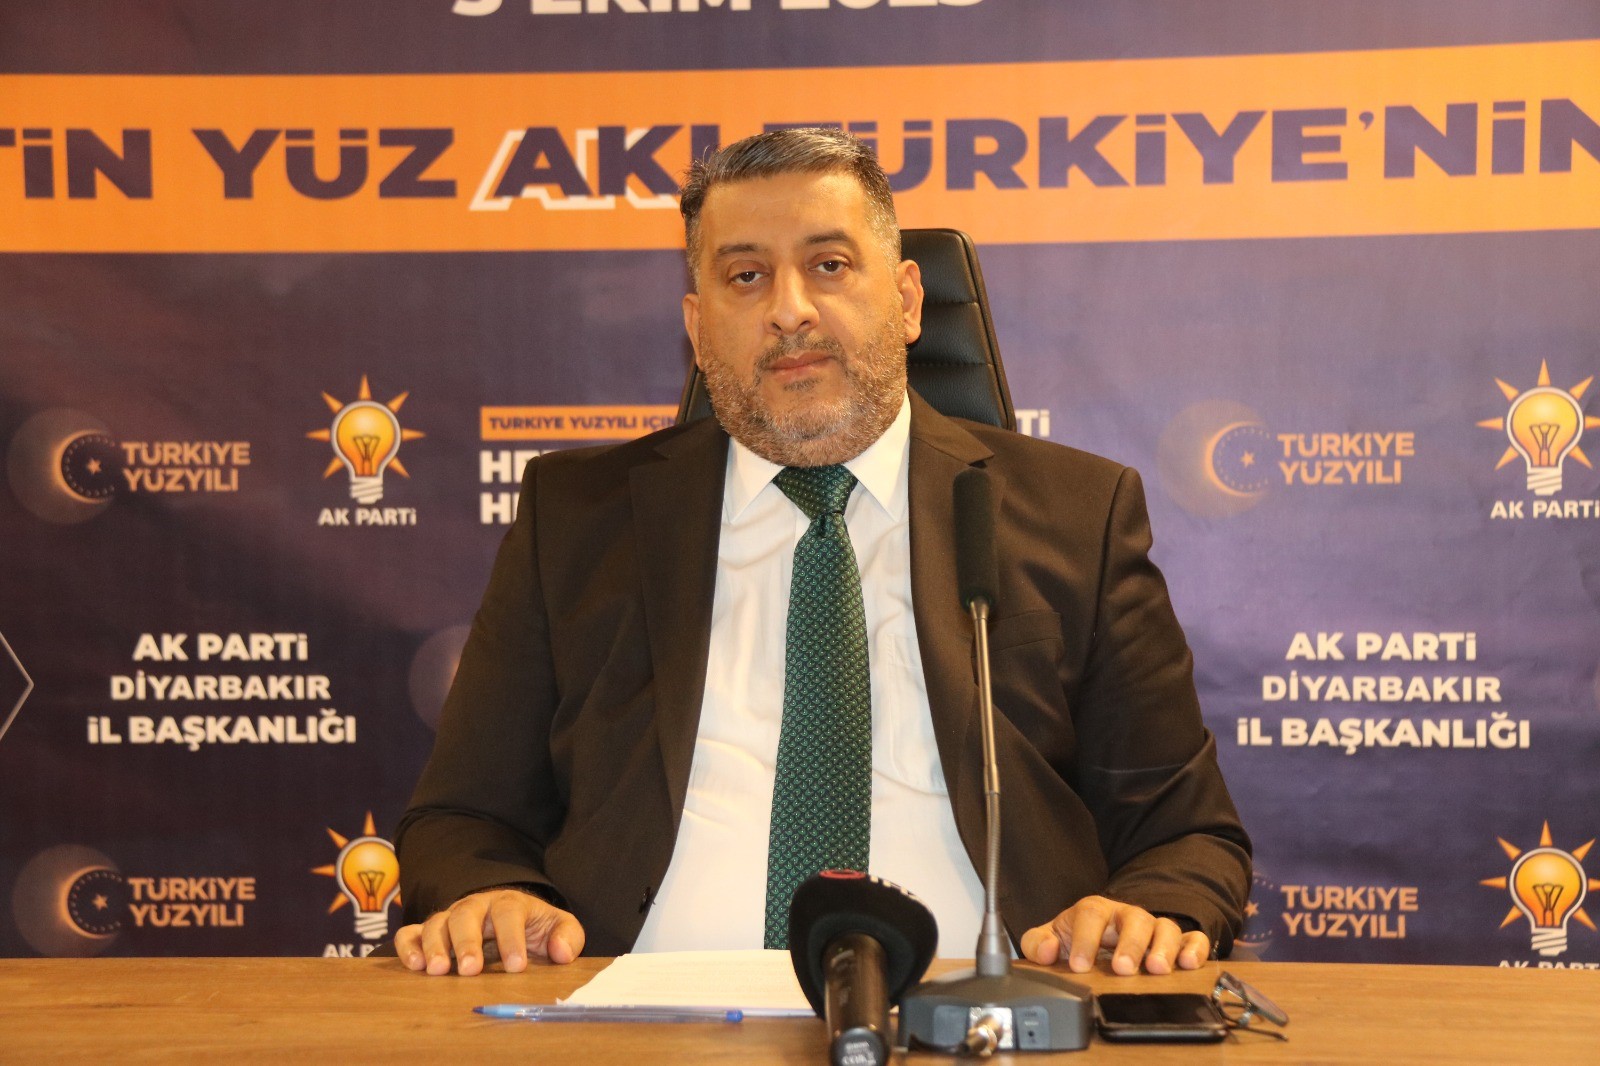 AK Parti Diyarbakır İl Başkan Vekili Ocak’tan büyük kongre değerlendirmesi